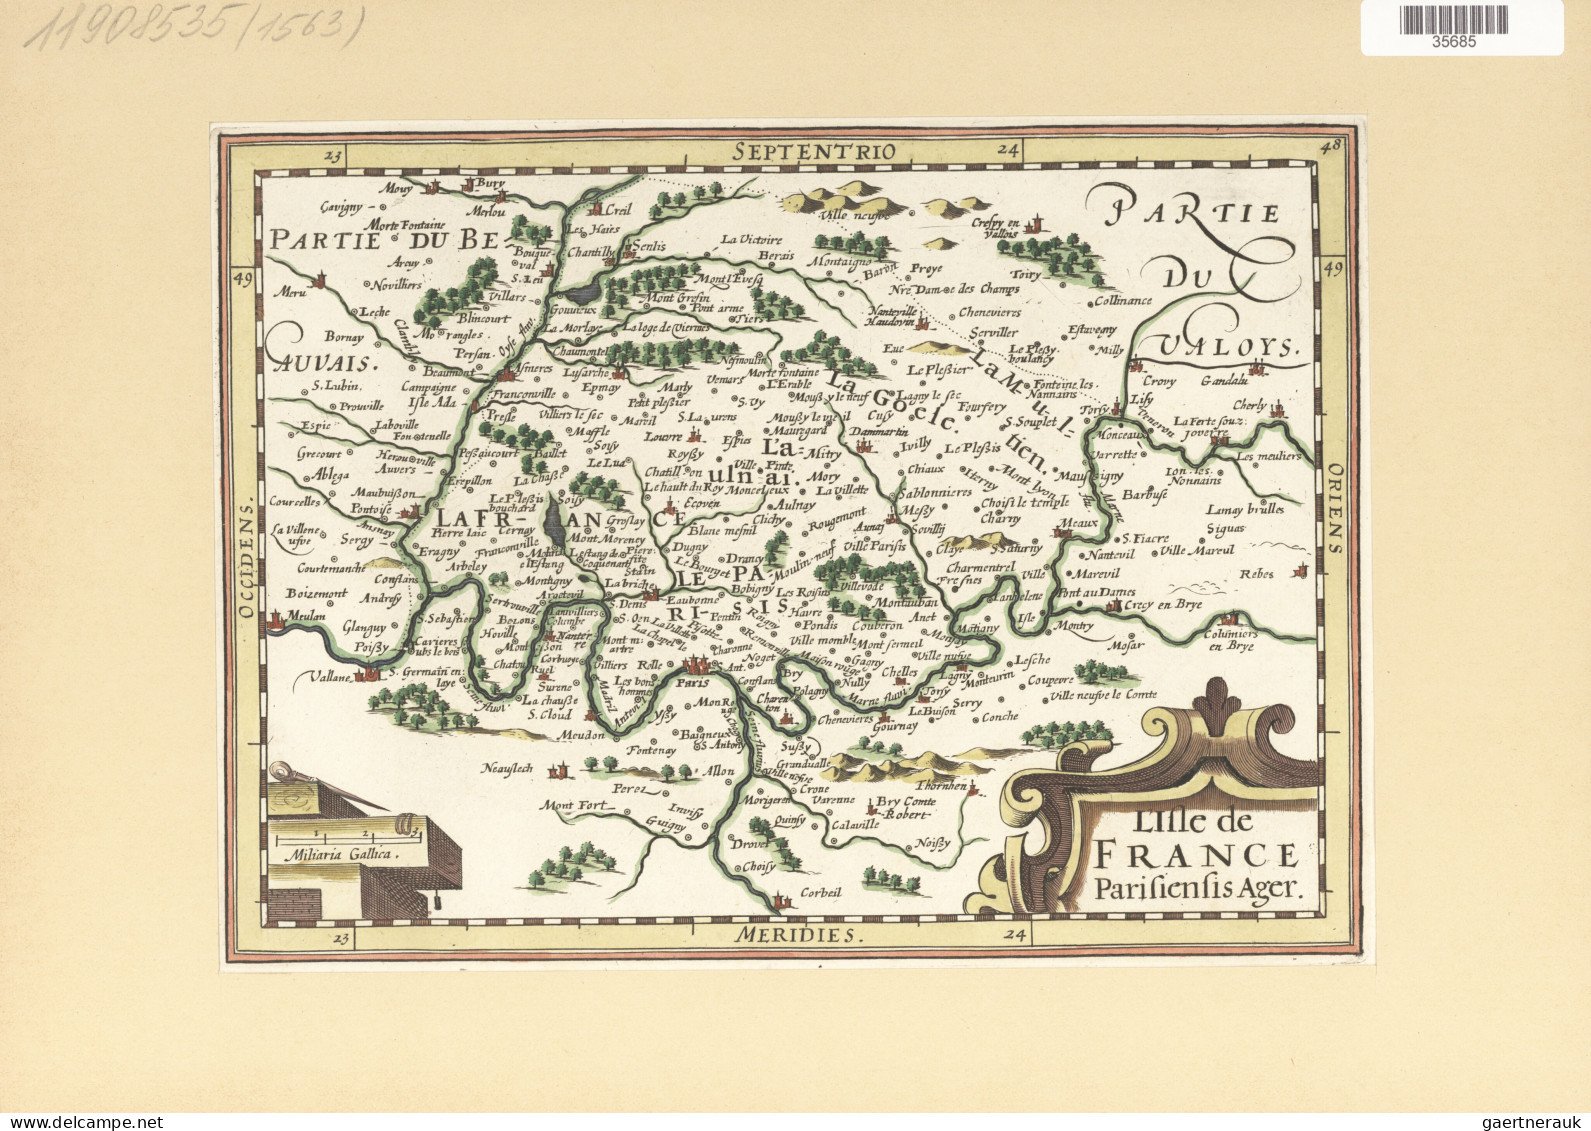 Landkarten und Stiche: 1580/1820 (ca). Bestand von über 130 alten Landkarten, me